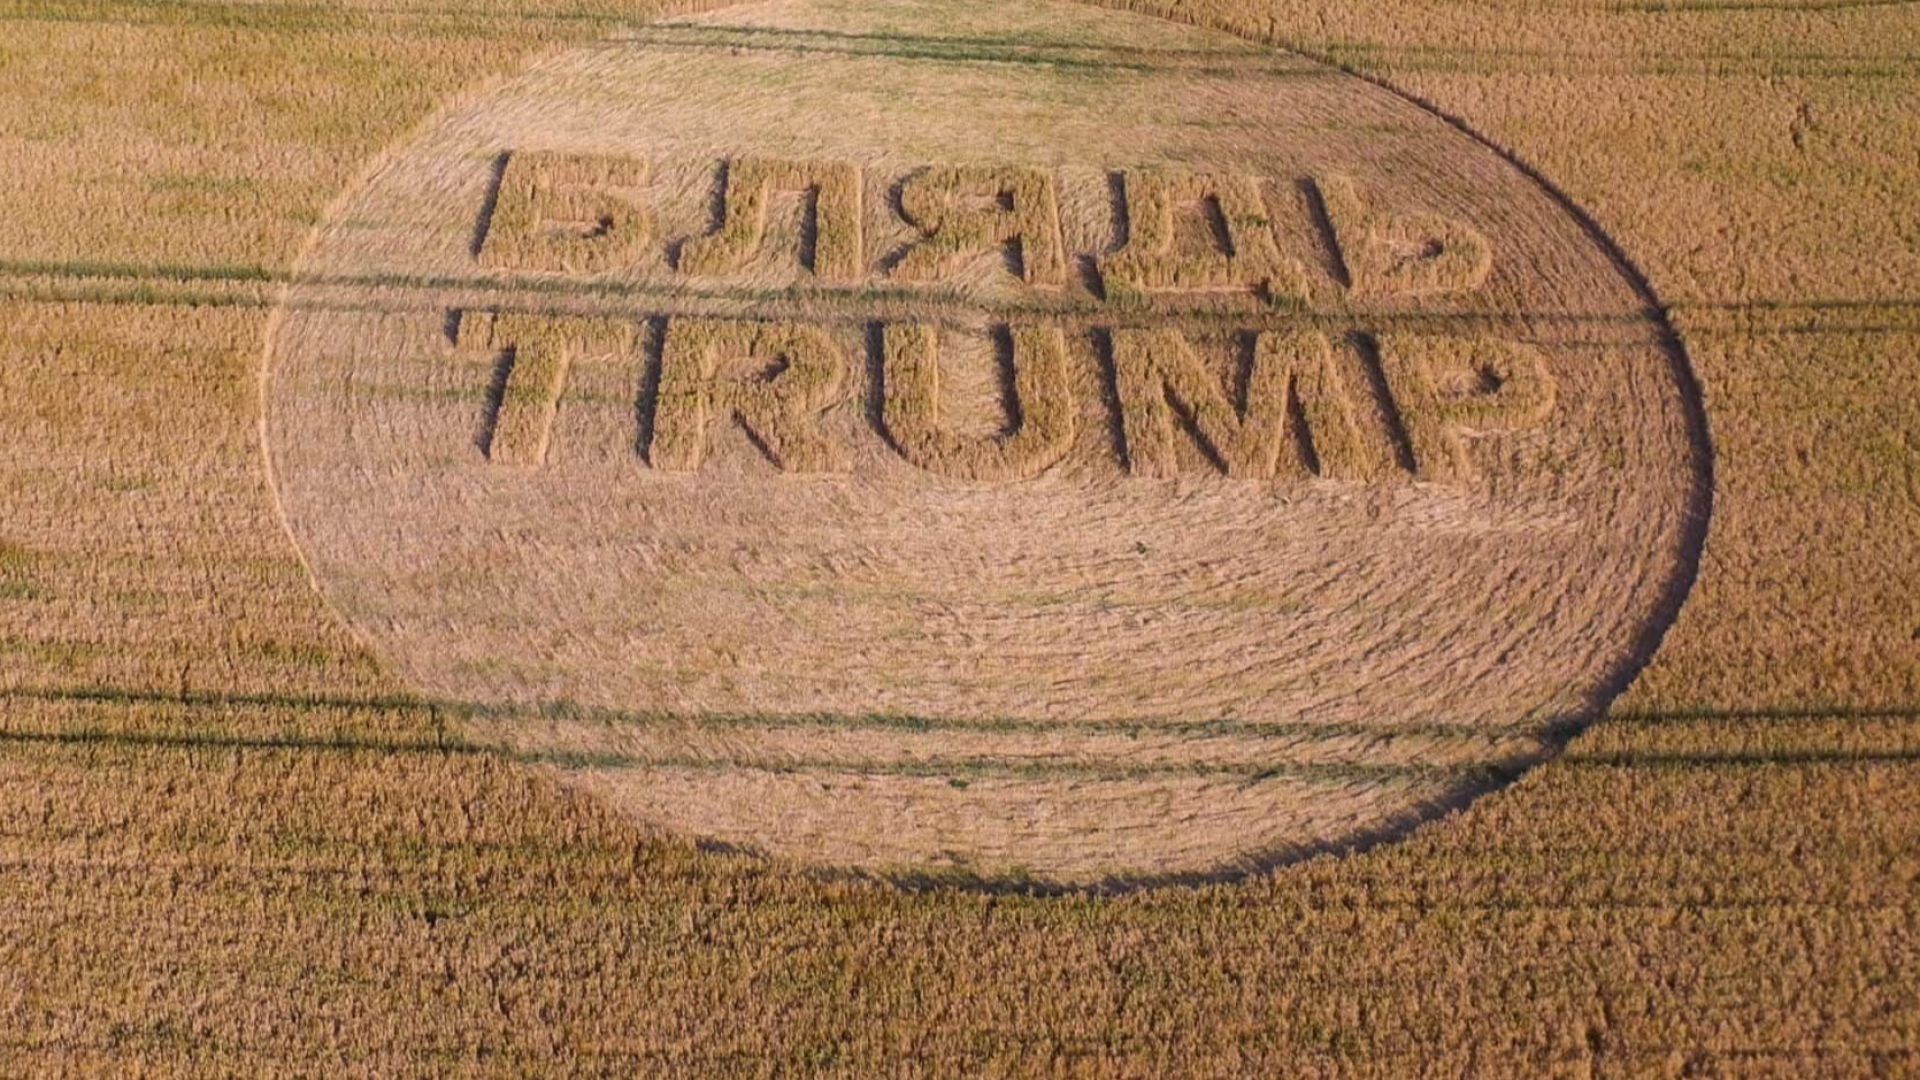 Британски фермер обижда Тръмп с надпис на нивата си (видео)